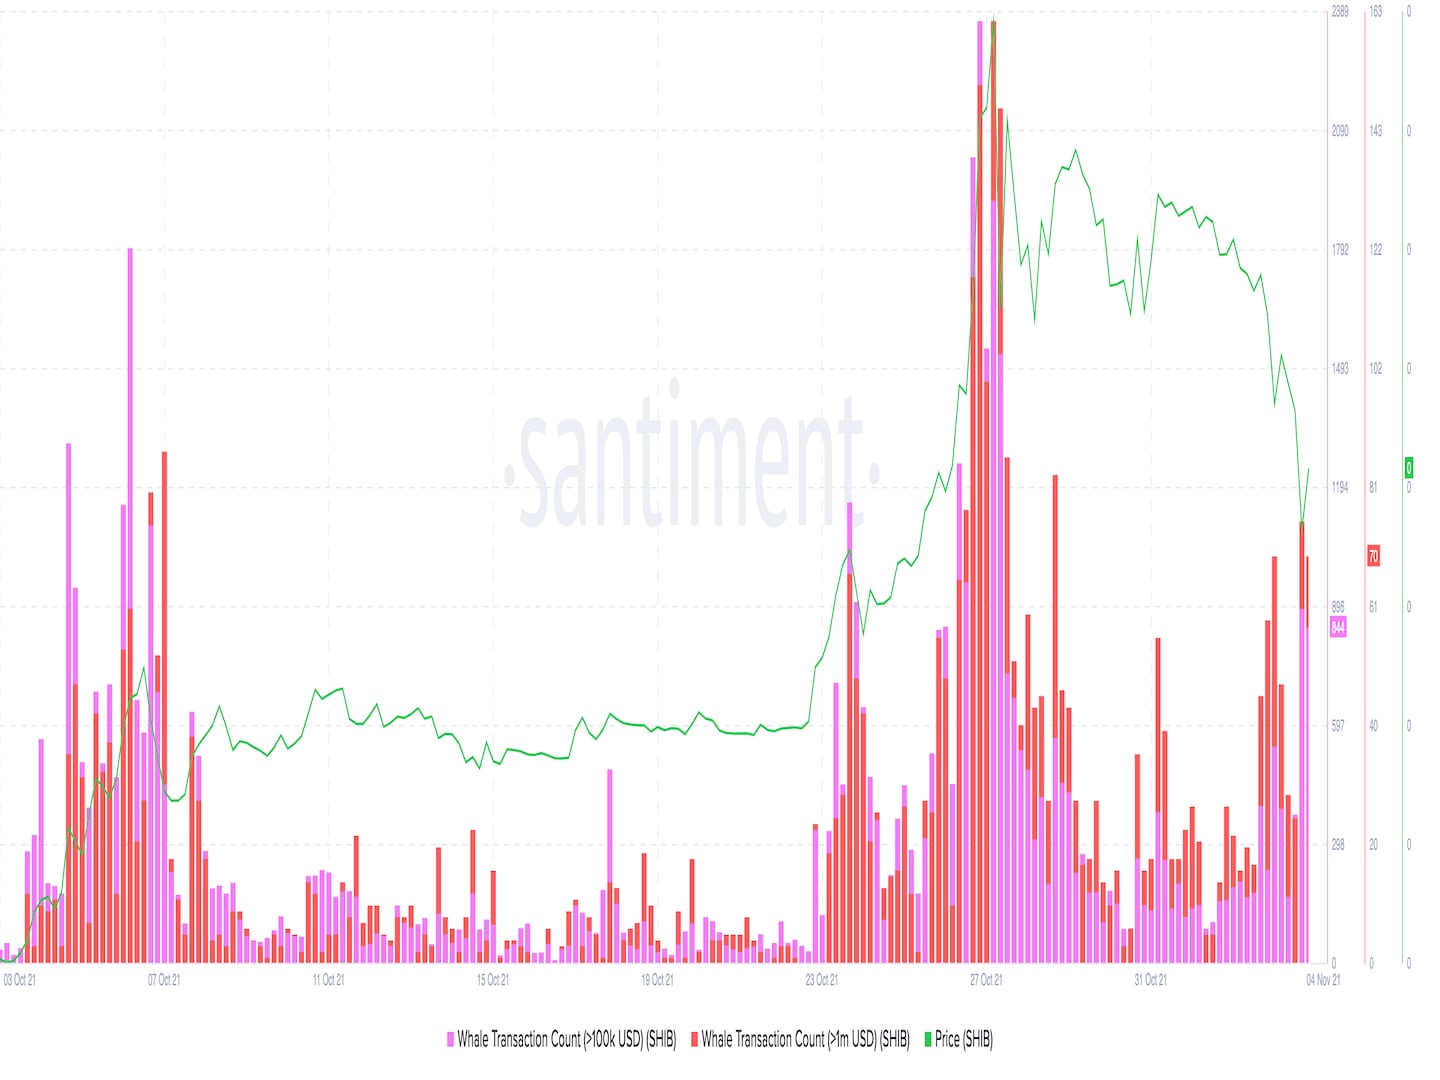 Large valued SHIB transactions vs. SHIB's price. (Santiment)